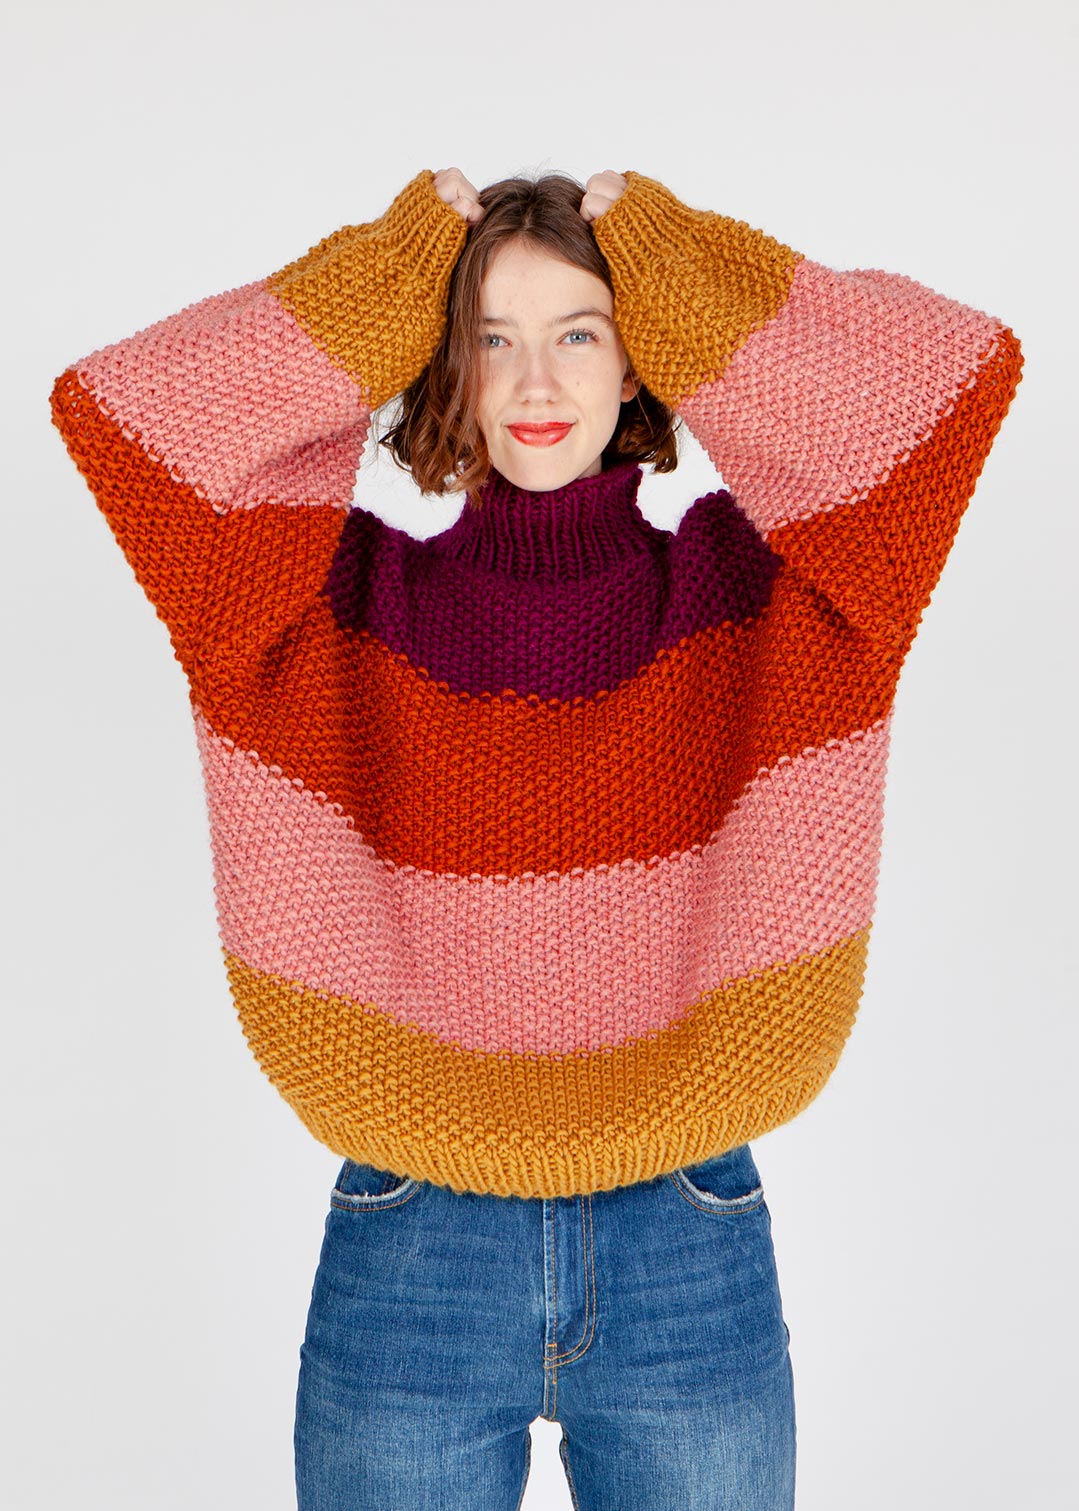 http://www.weareknitters.de/cdn/shop/files/knitting-kit-petite-wool-sweater-rice-jumper_en-01.jpg?v=1703103731